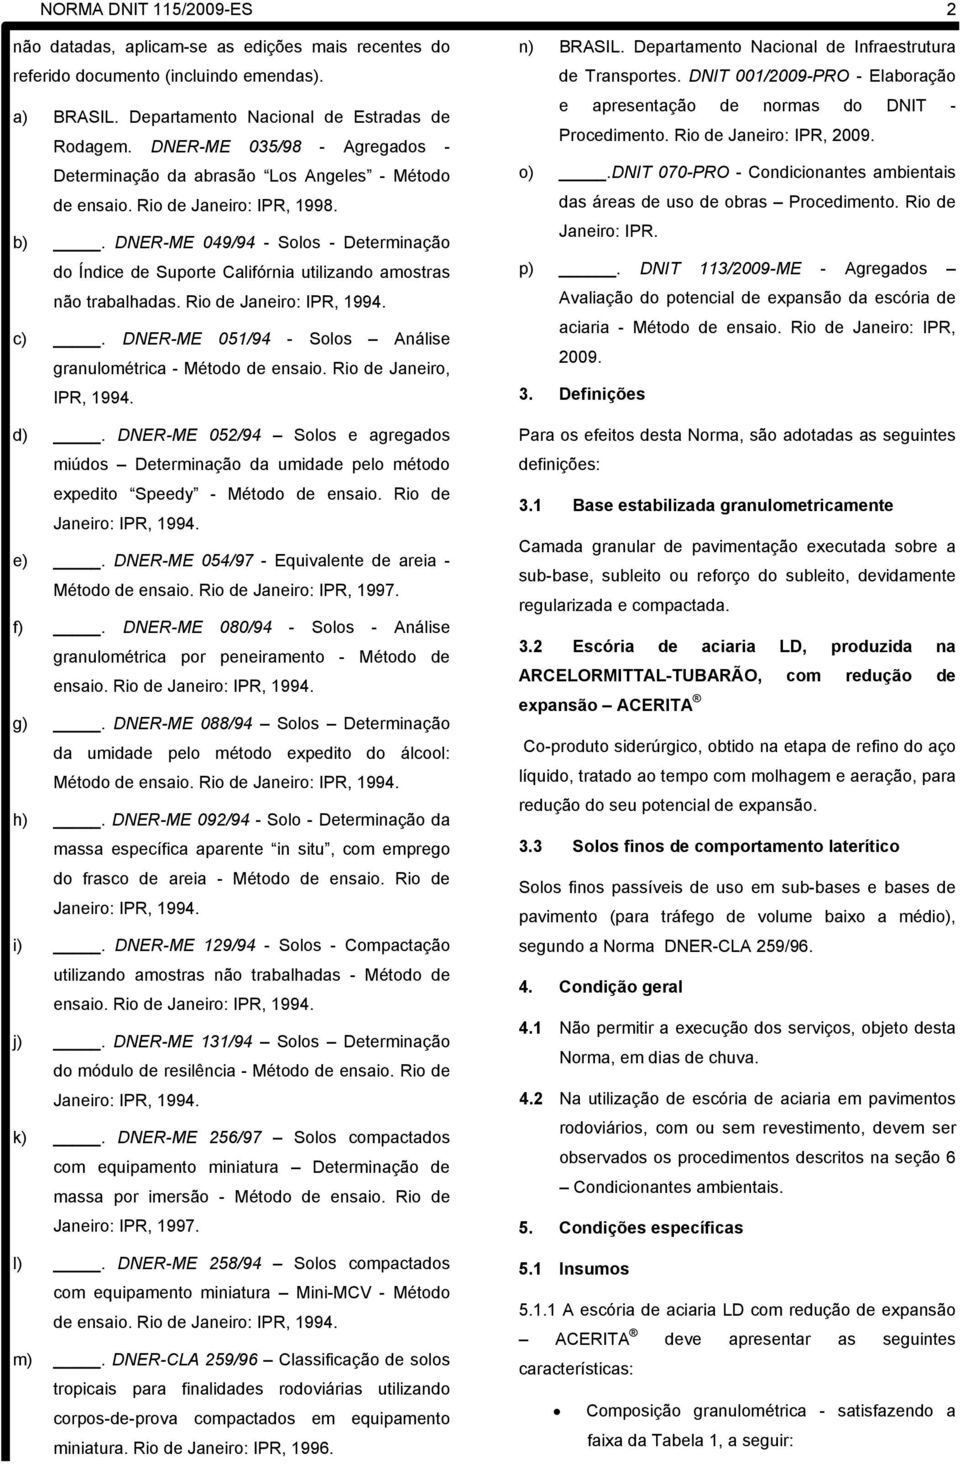 DNER-ME 049/94 - Solos - Determinação do Índice de Suporte Califórnia utilizando amostras não trabalhadas. Rio de Janeiro: IPR, 1994. c).